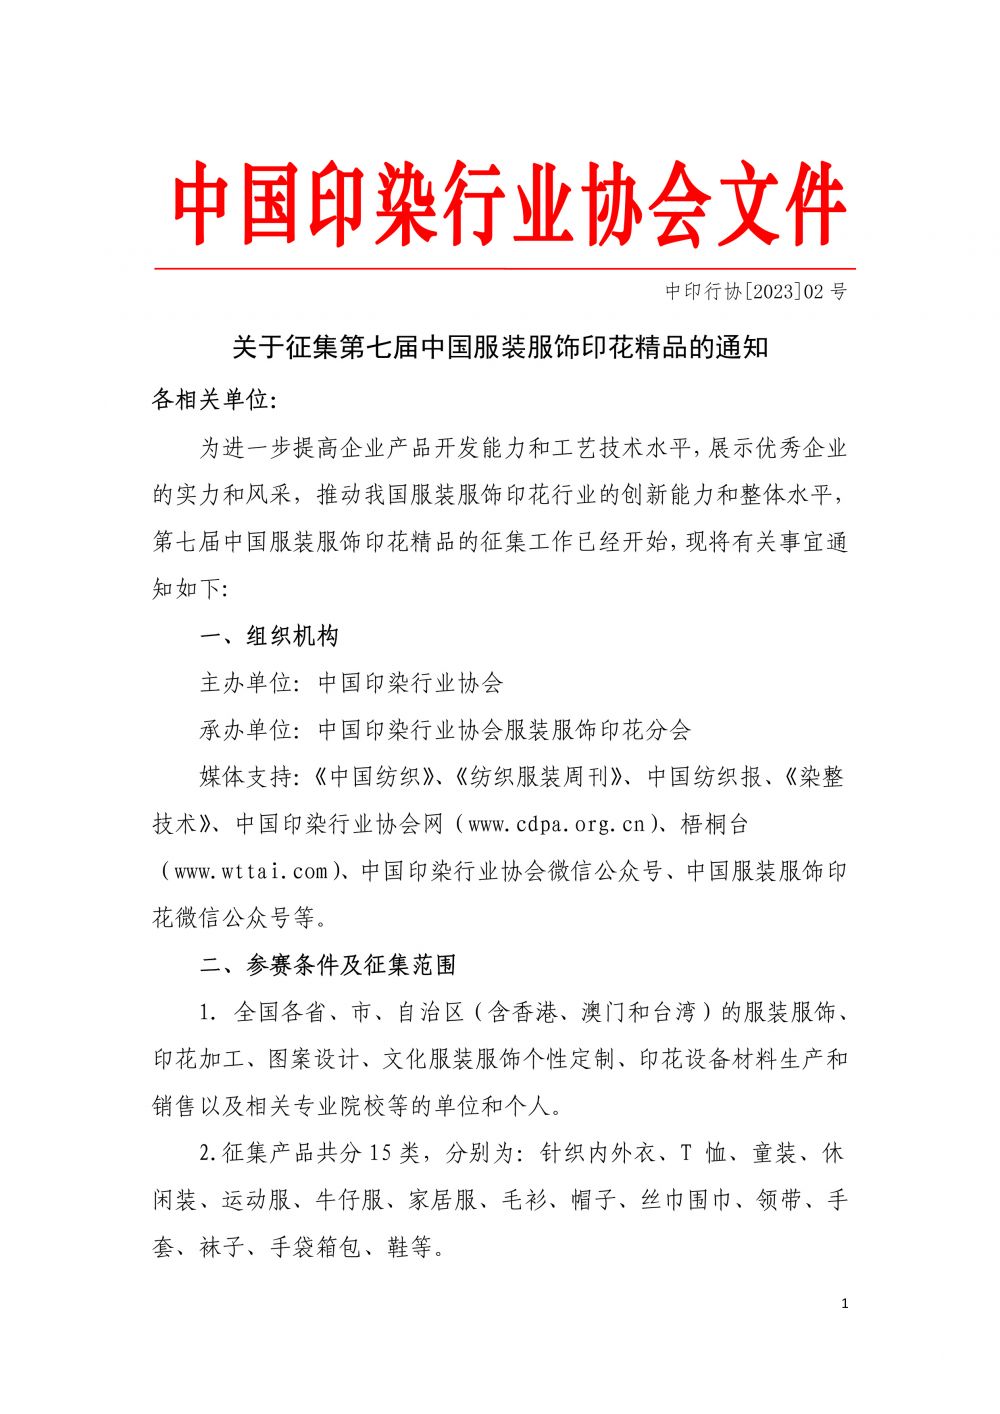 2023--沙巴体育征集第七届“中国服装服饰印花精品”的通知-1.jpg